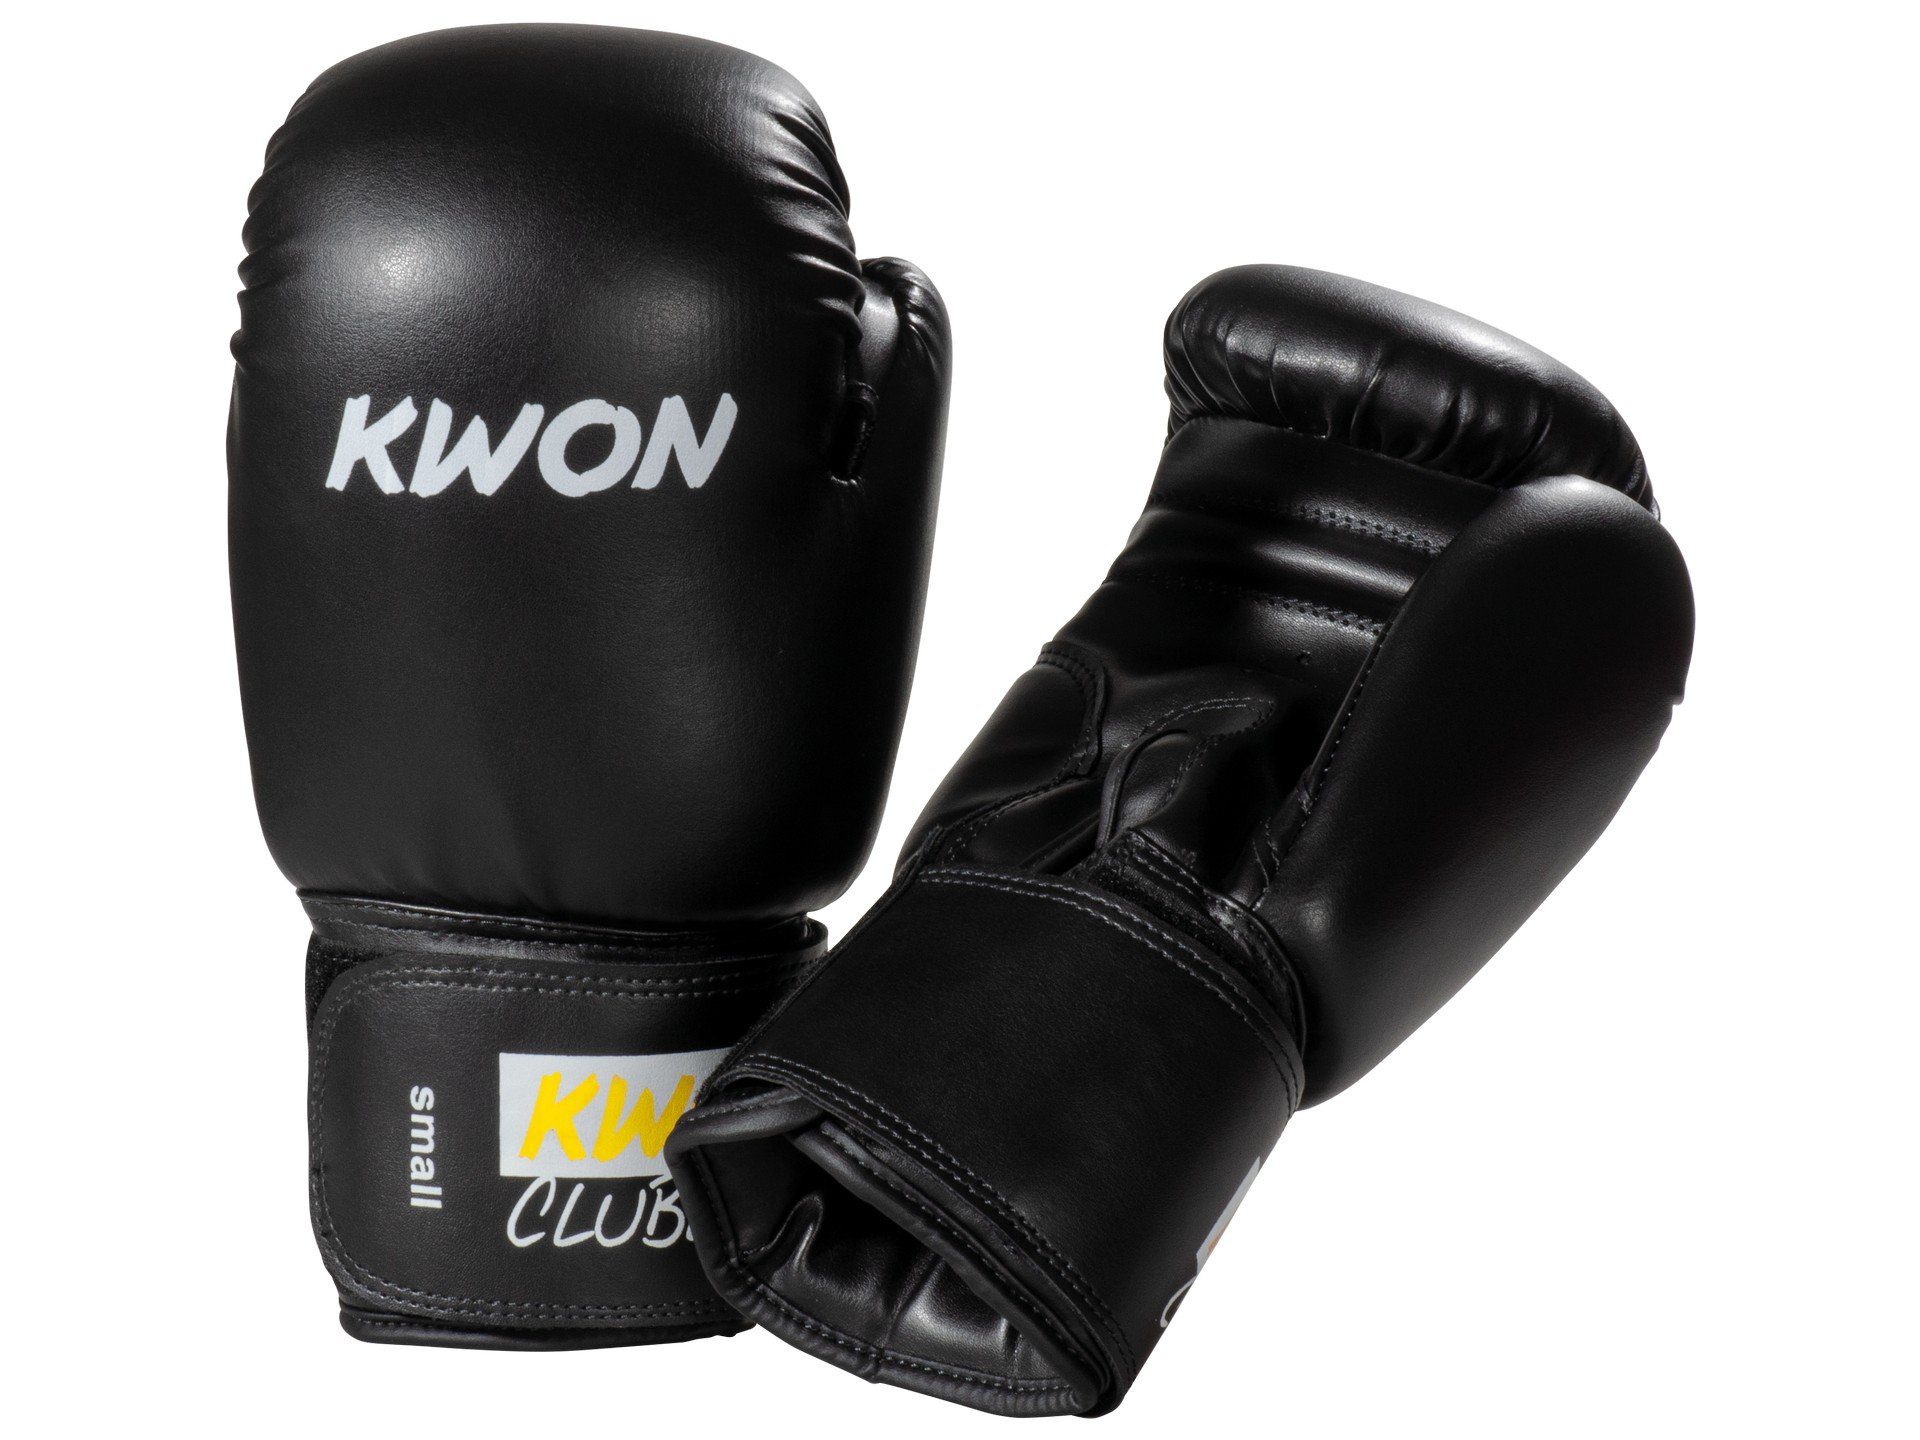 Hand Serie), weiß small Line MMA KWON Thai, Kickboxen Unzen Muay Pointer (Profi, Club Kickboxen, Boxhandschuhe Boxen Boxen, Box-Handschuhe 8